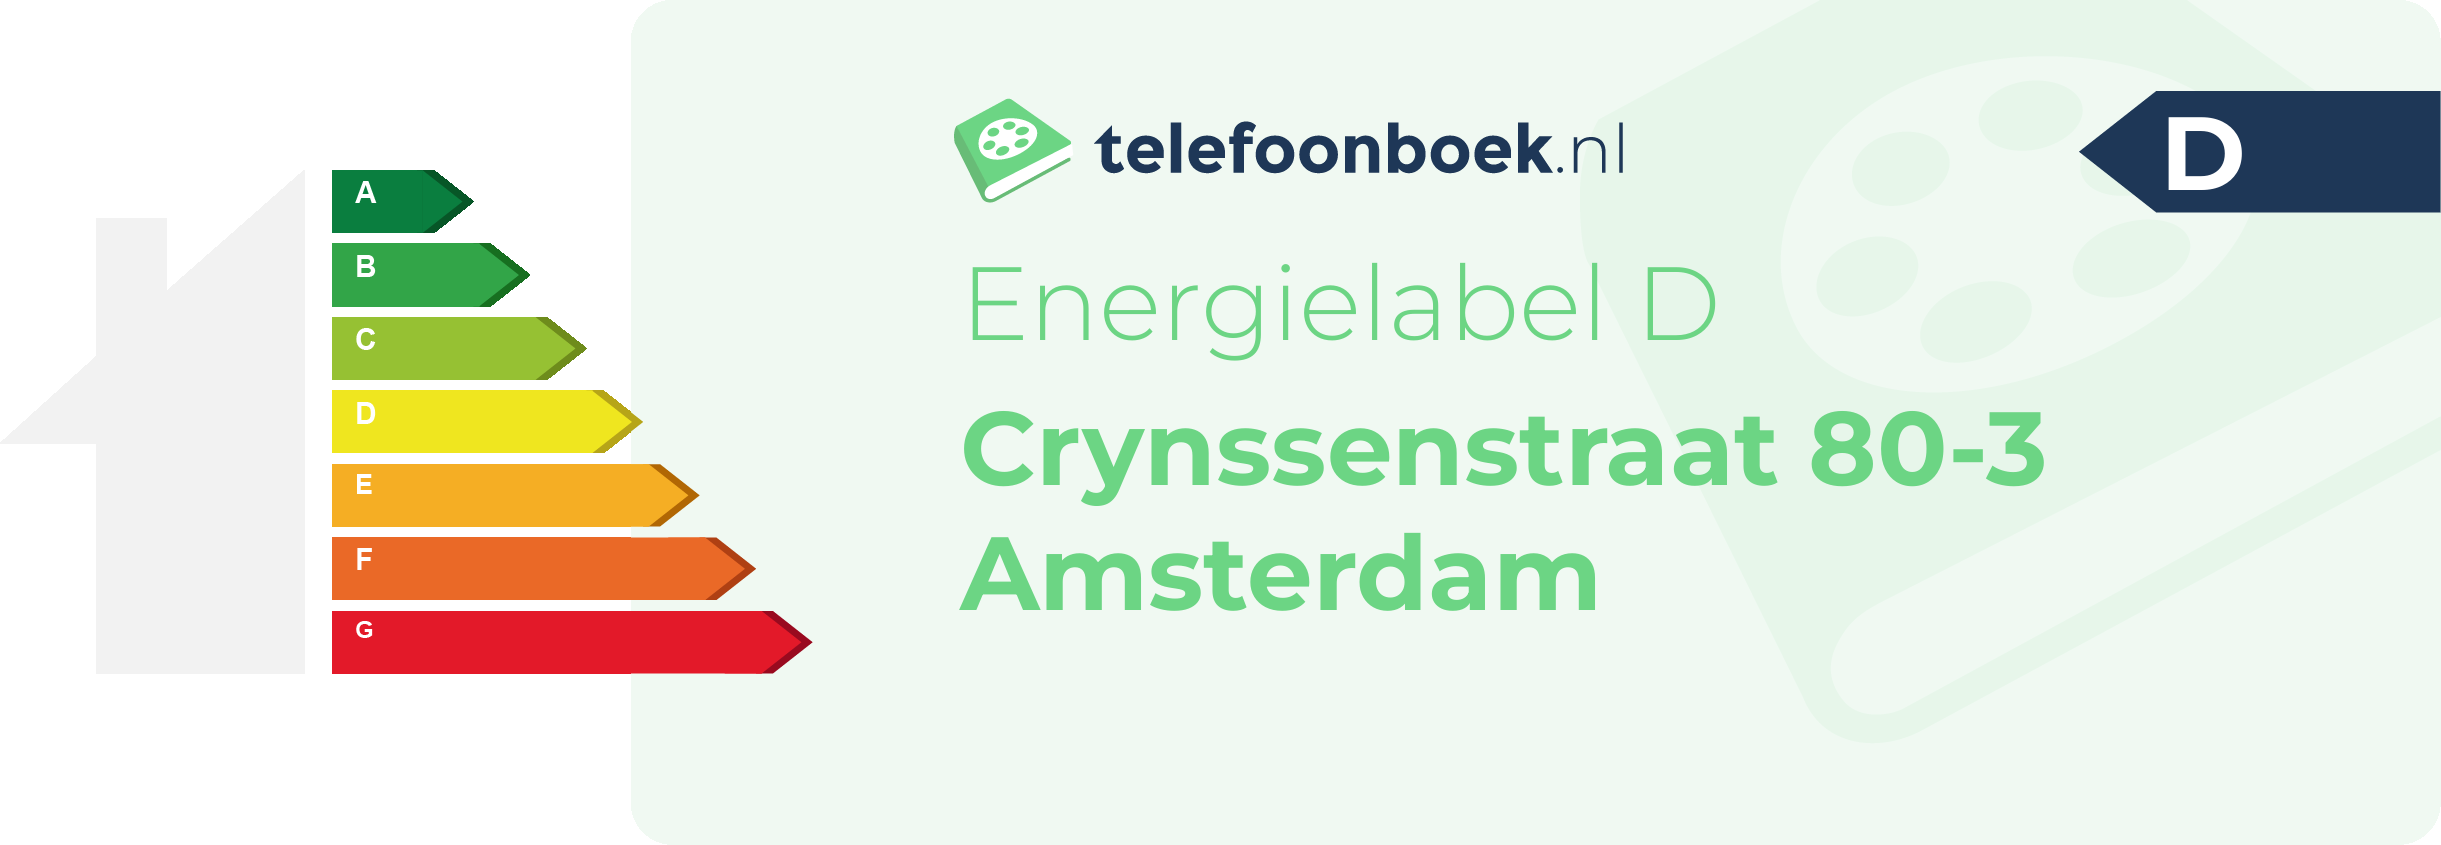 Energielabel Crynssenstraat 80-3 Amsterdam